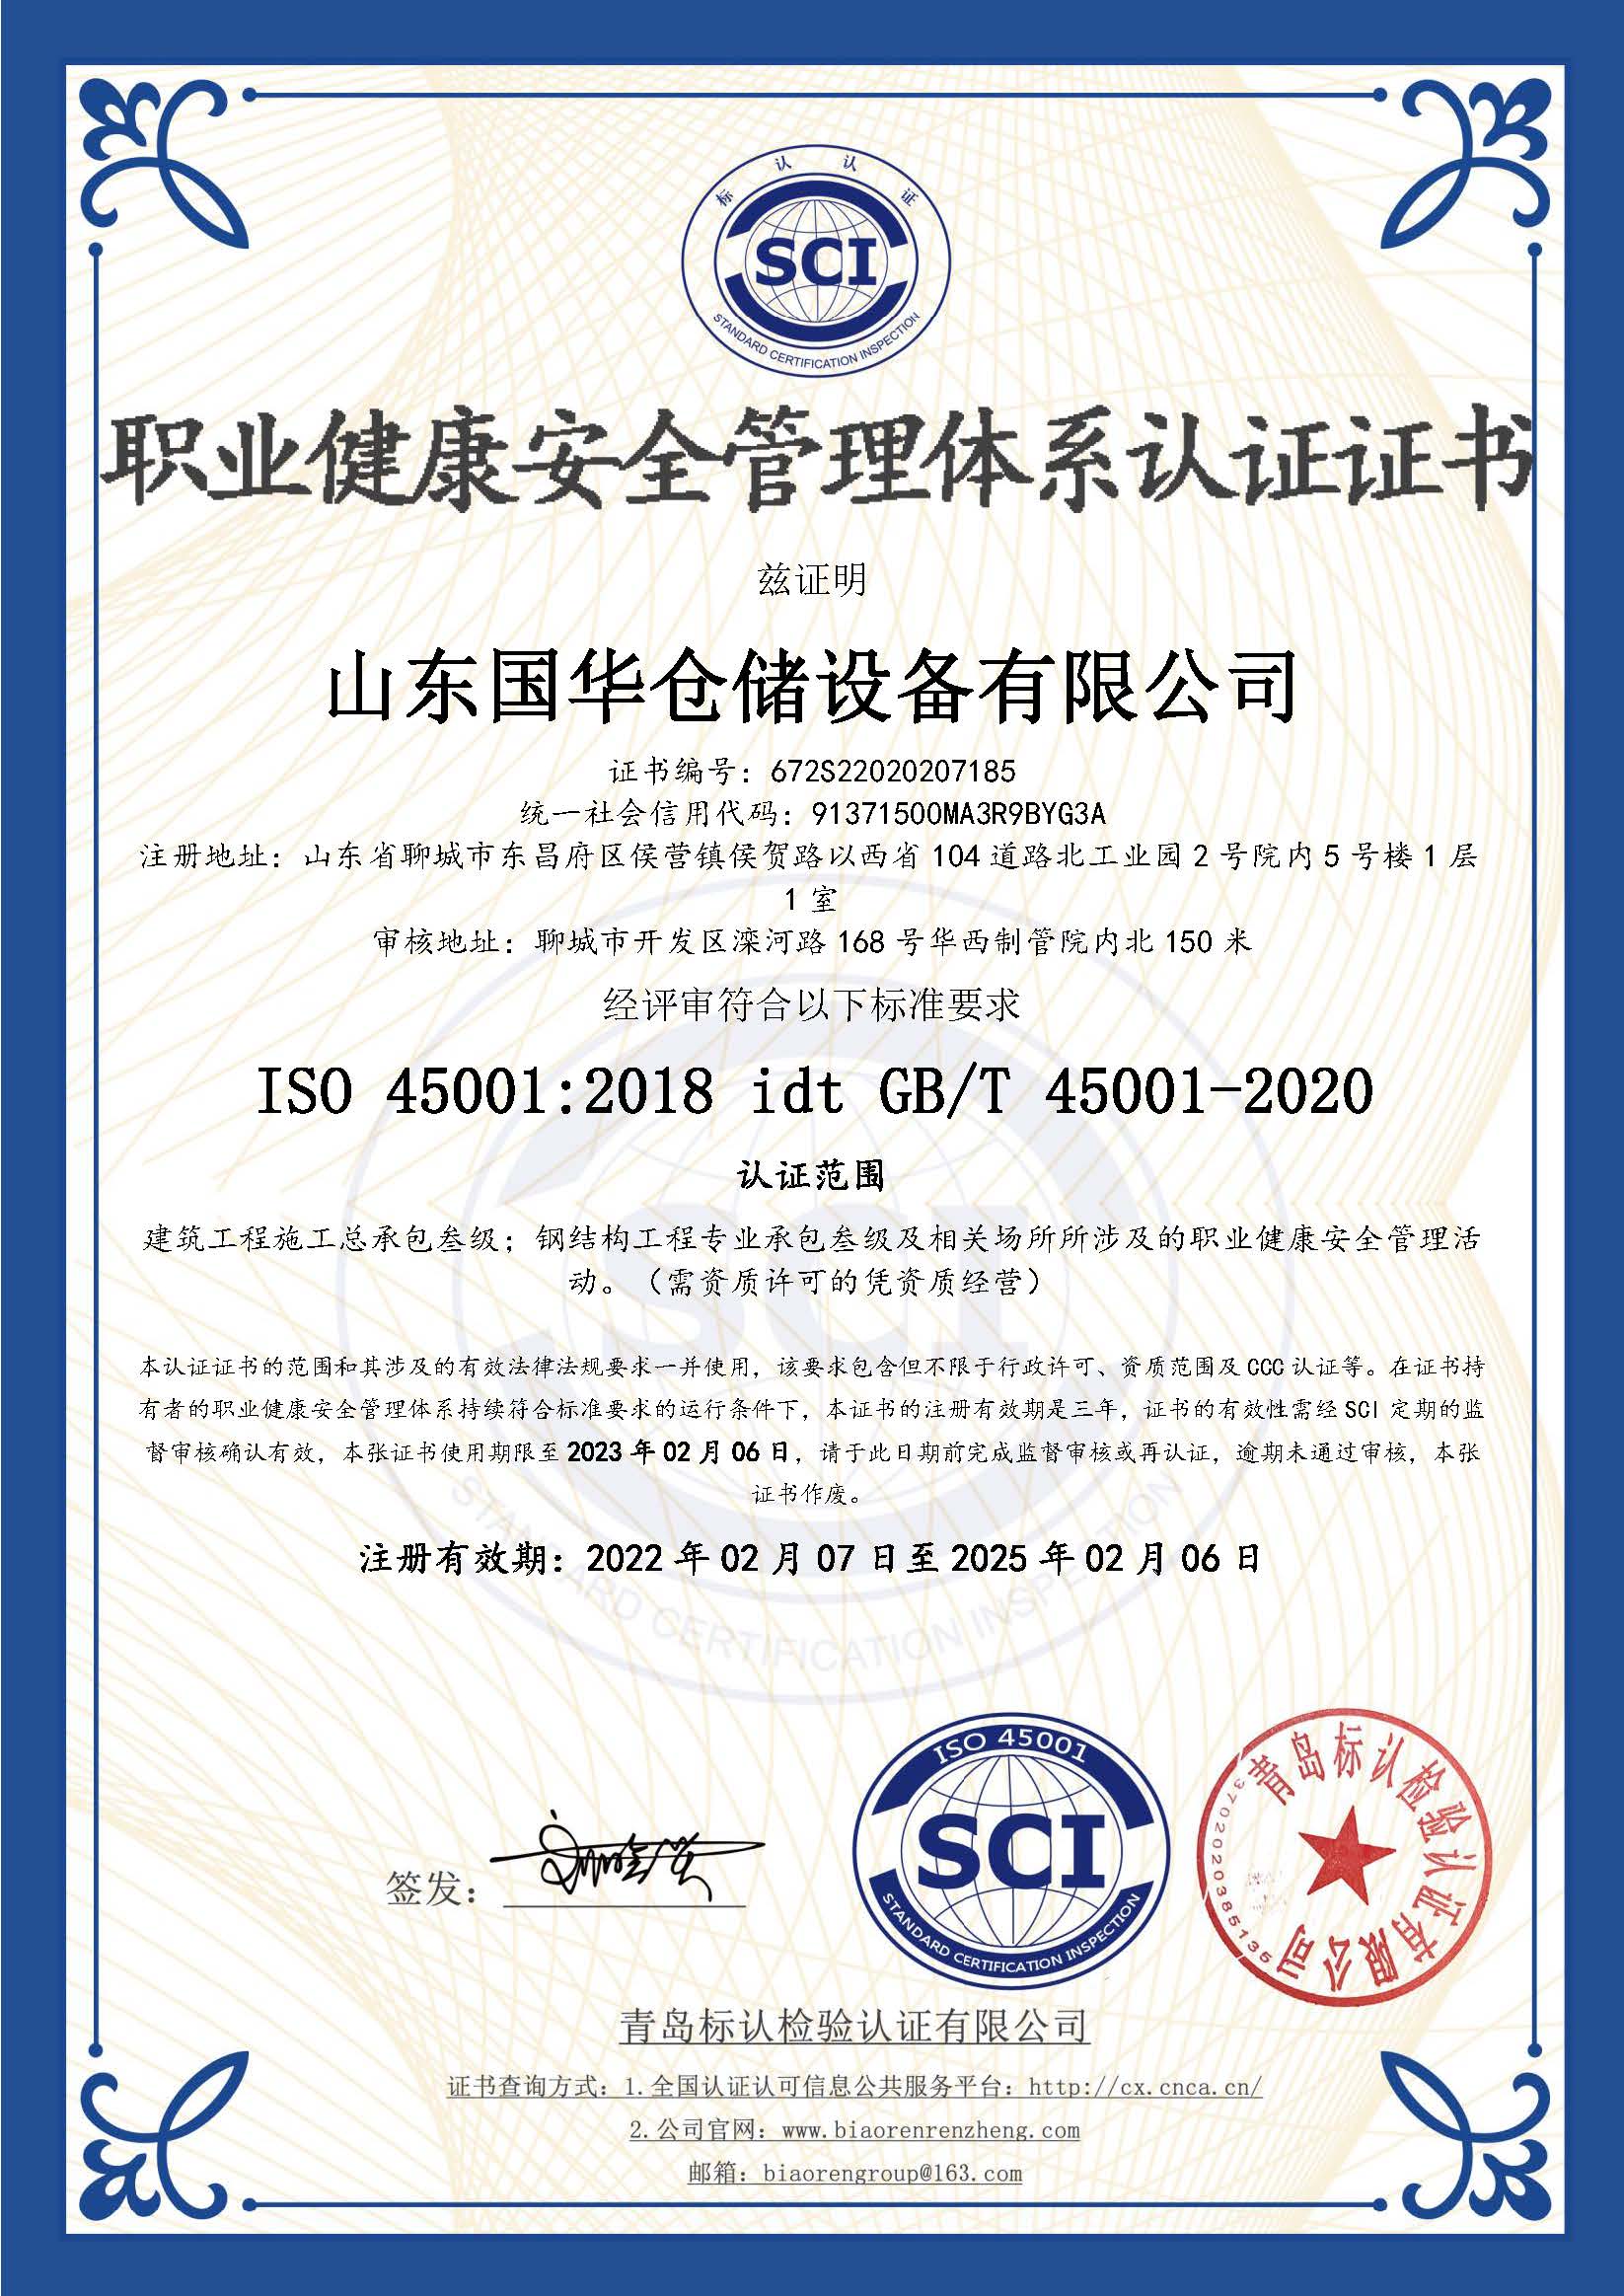 克孜勒苏柯尔克孜钢板仓职业健康安全管理体系认证证书